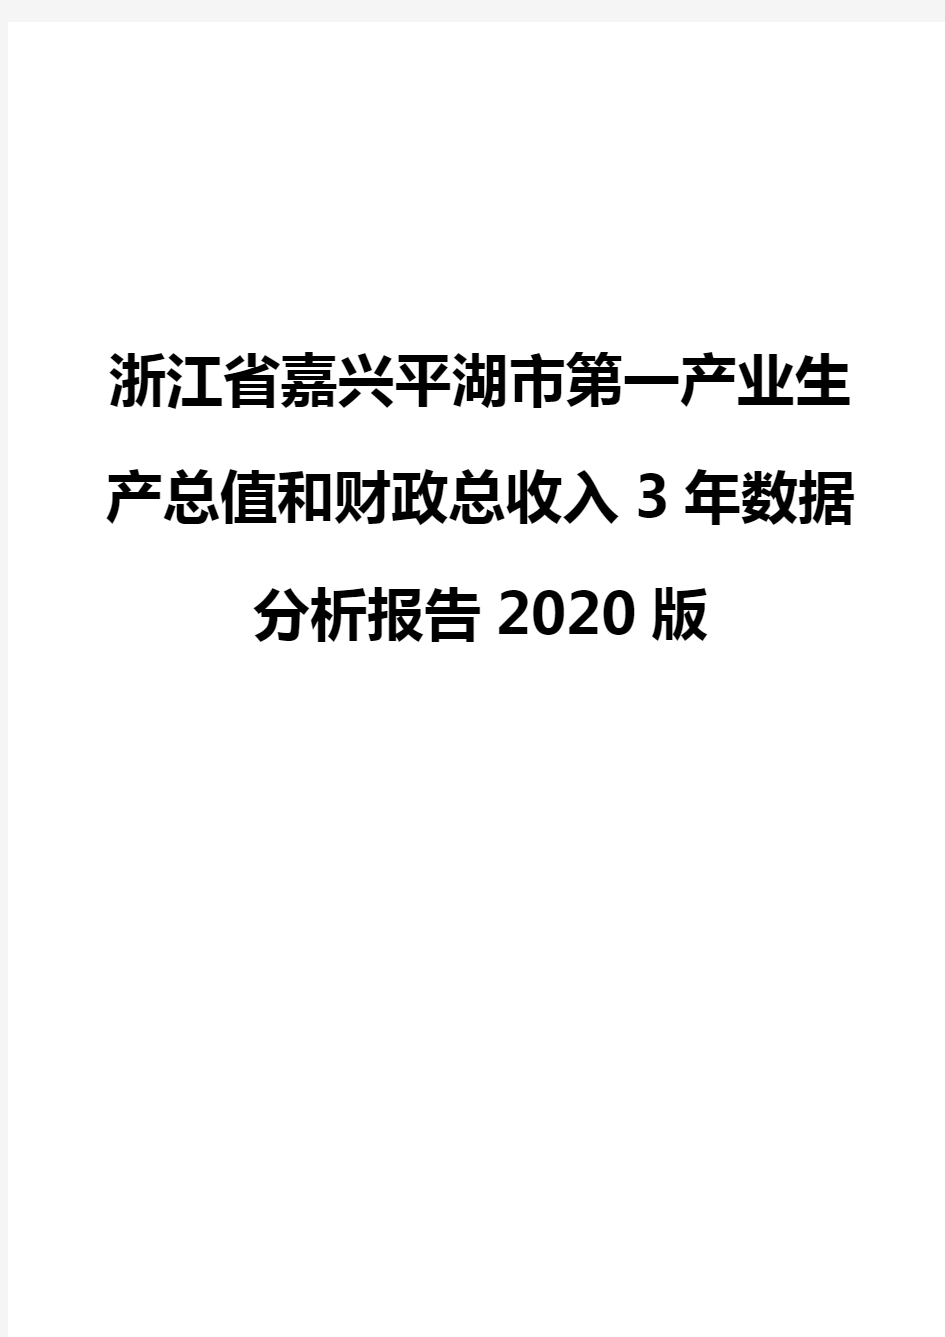 浙江省嘉兴平湖市第一产业生产总值和财政总收入3年数据分析报告2020版